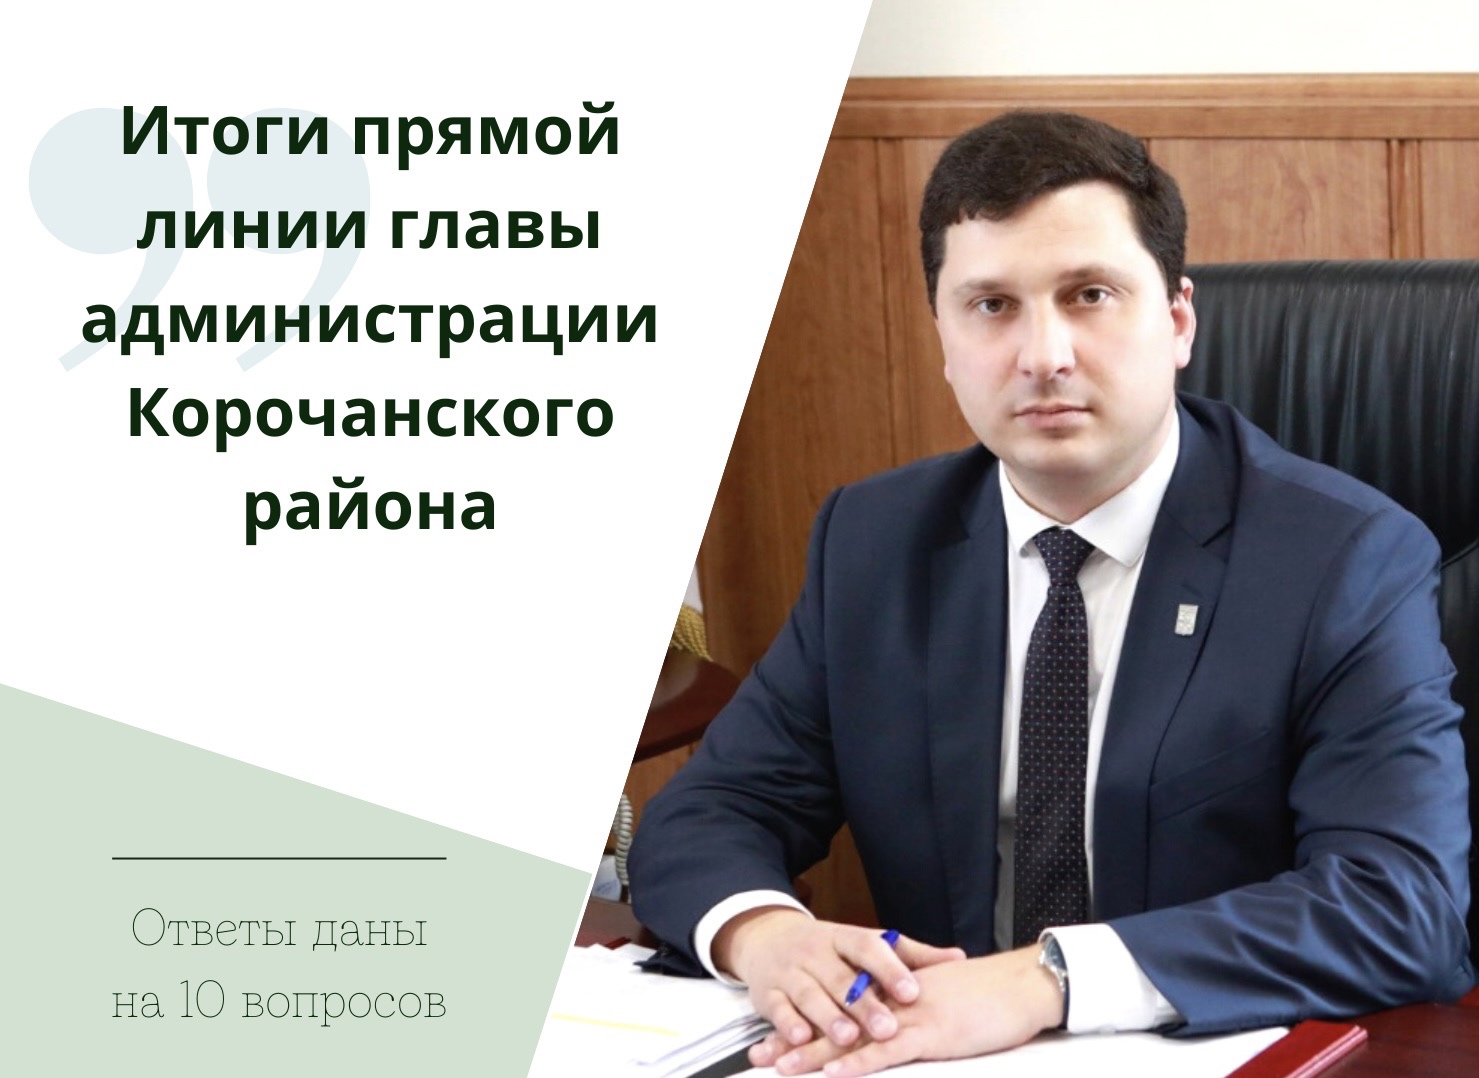 В ходе прямой линии глава администрации района Николай Нестеров ответил на 10 вопросов жителей